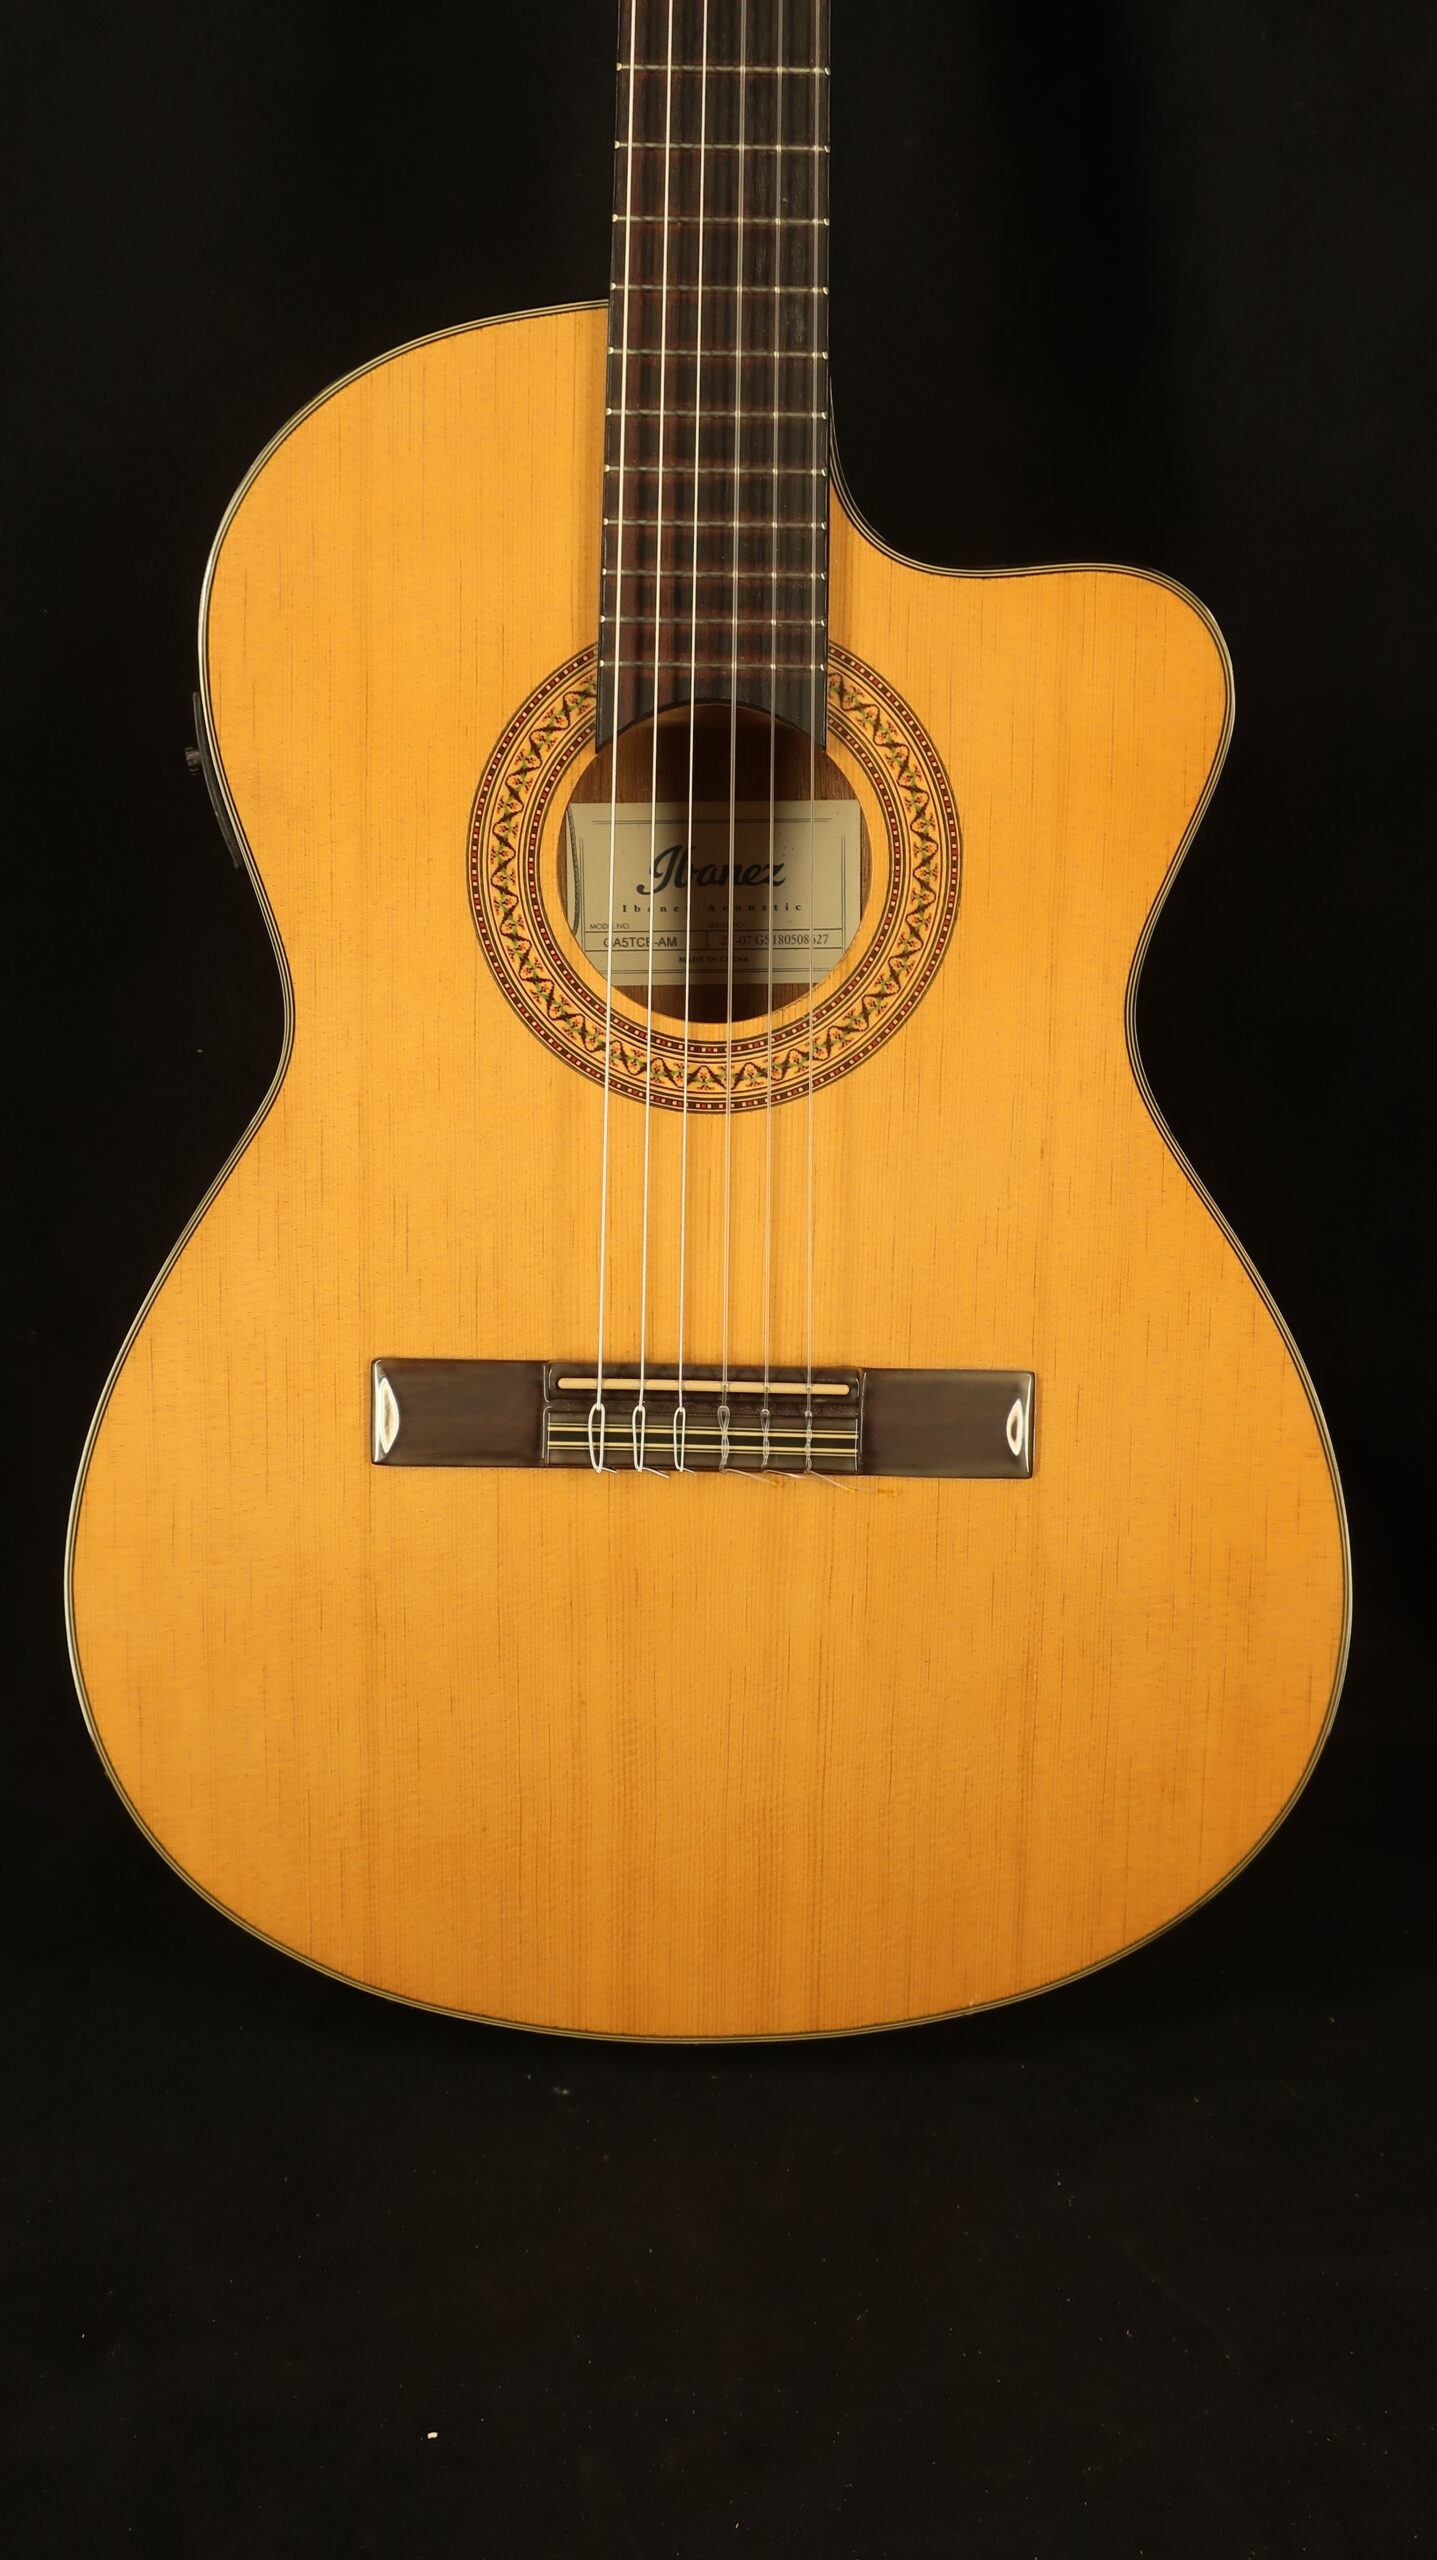 Guitare classique Ibanez modèle slim GASTCE-AM electro 2